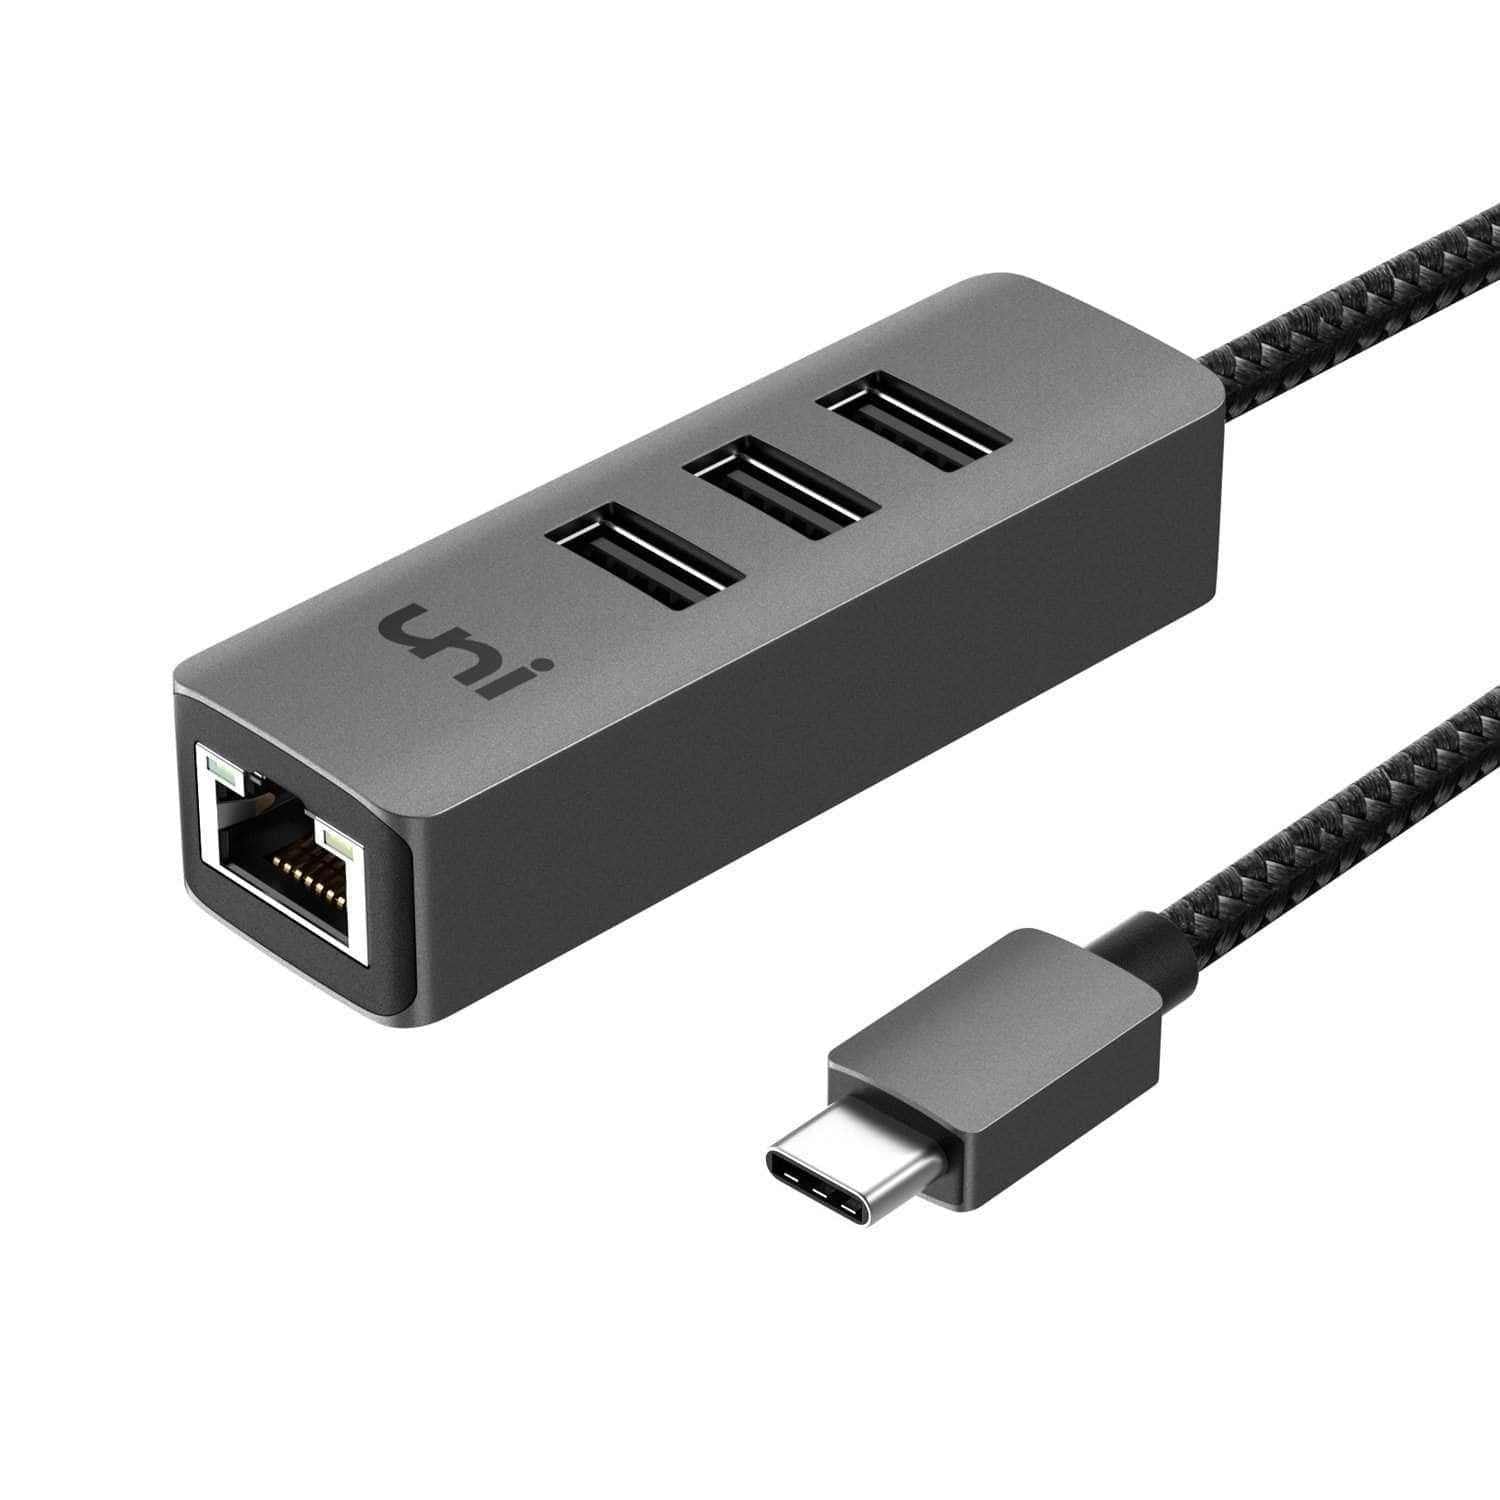 USB C ハブ | 1G イーサネット & 3 x USB 3.0 |耐久性のある